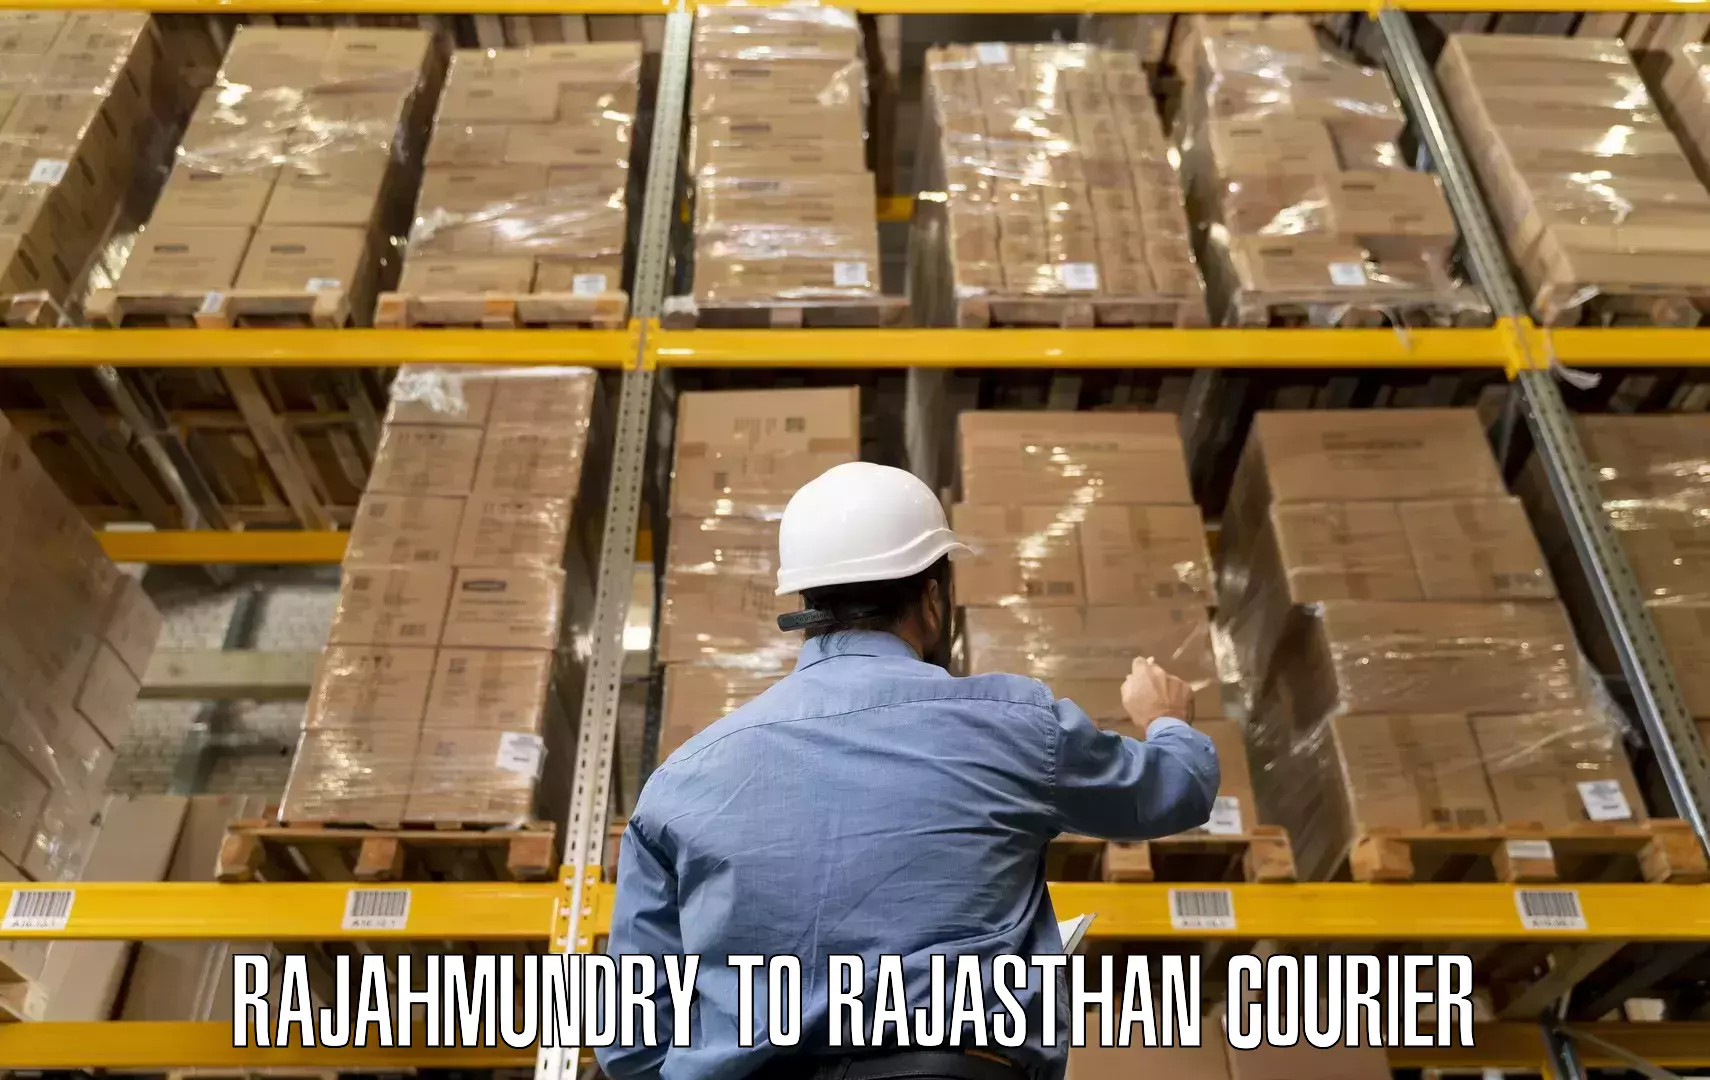 Efficient packing and moving Rajahmundry to Nainwa